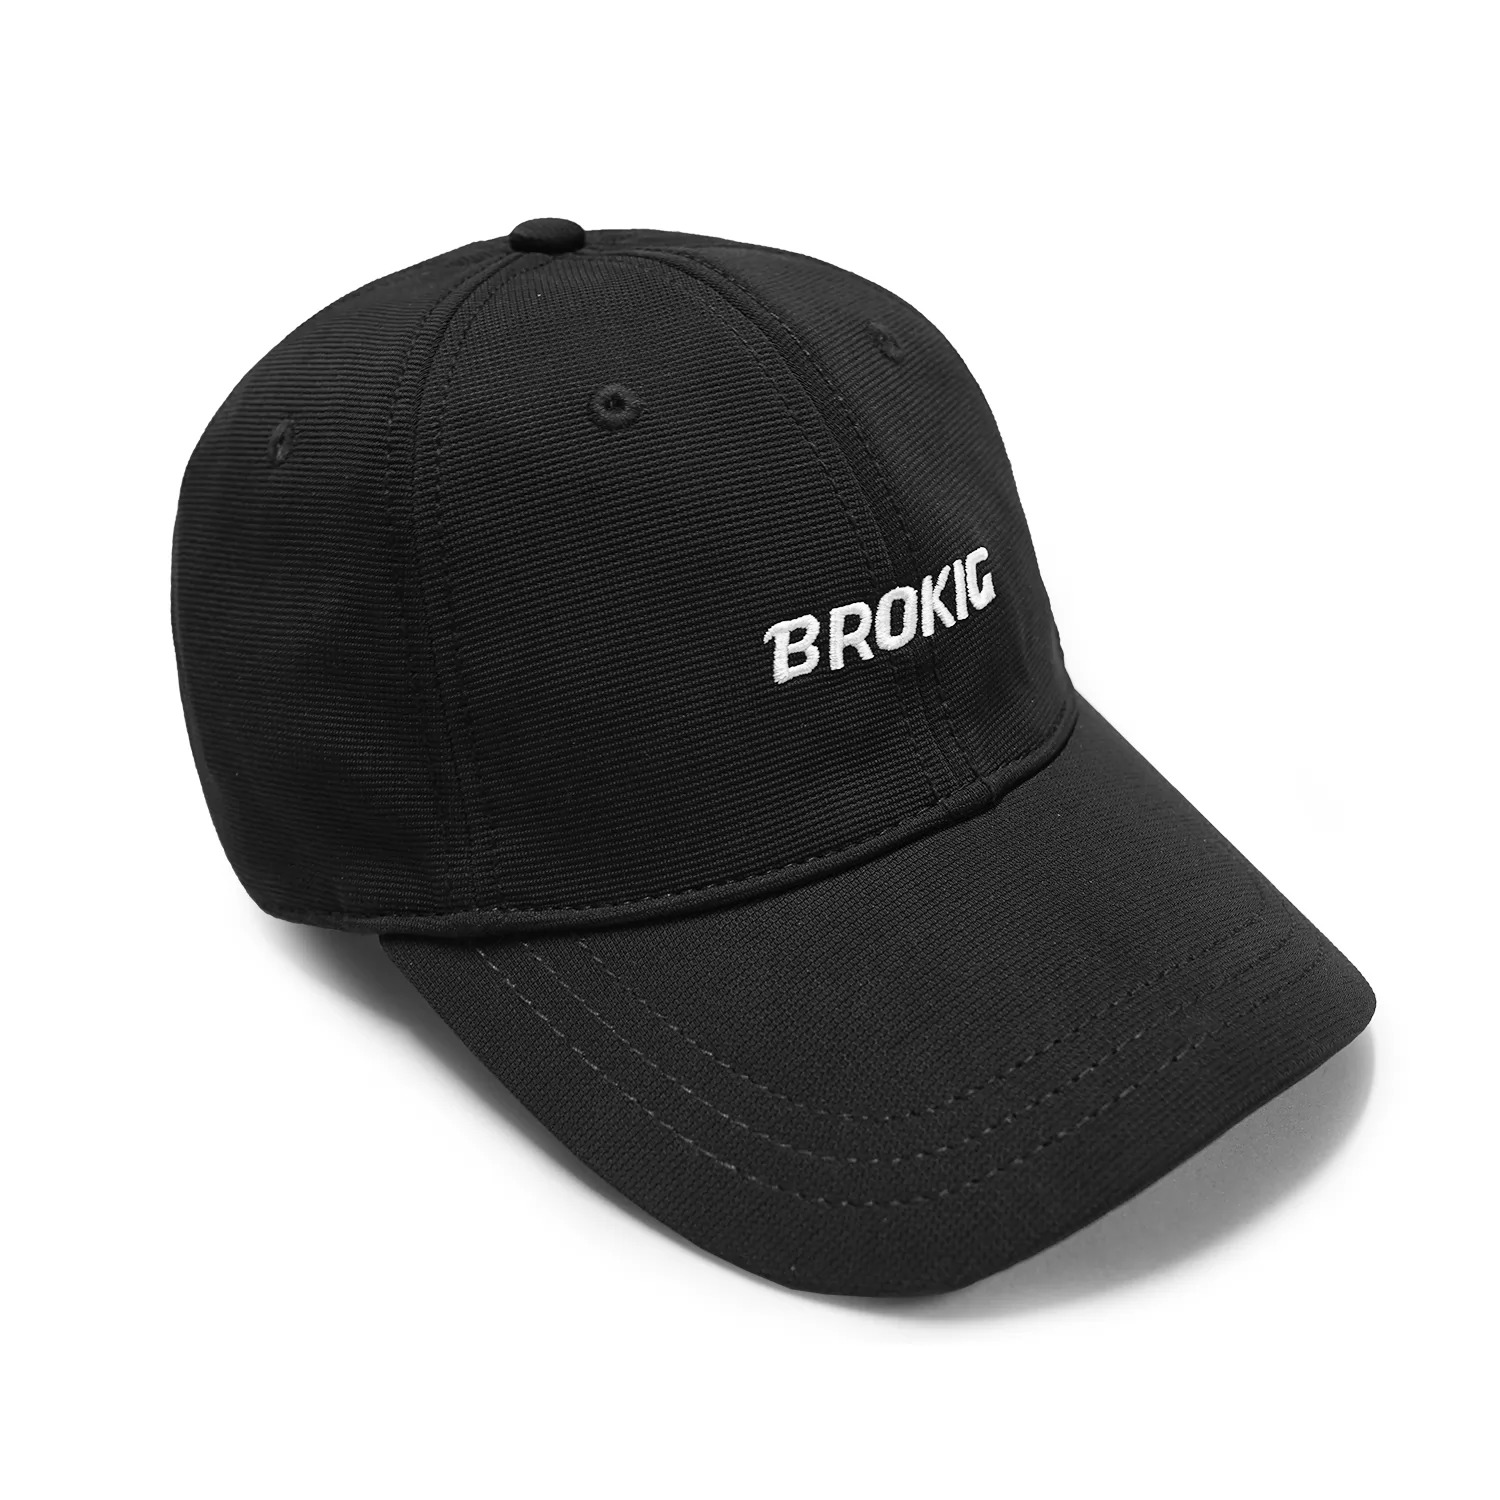 BROKIG Cap